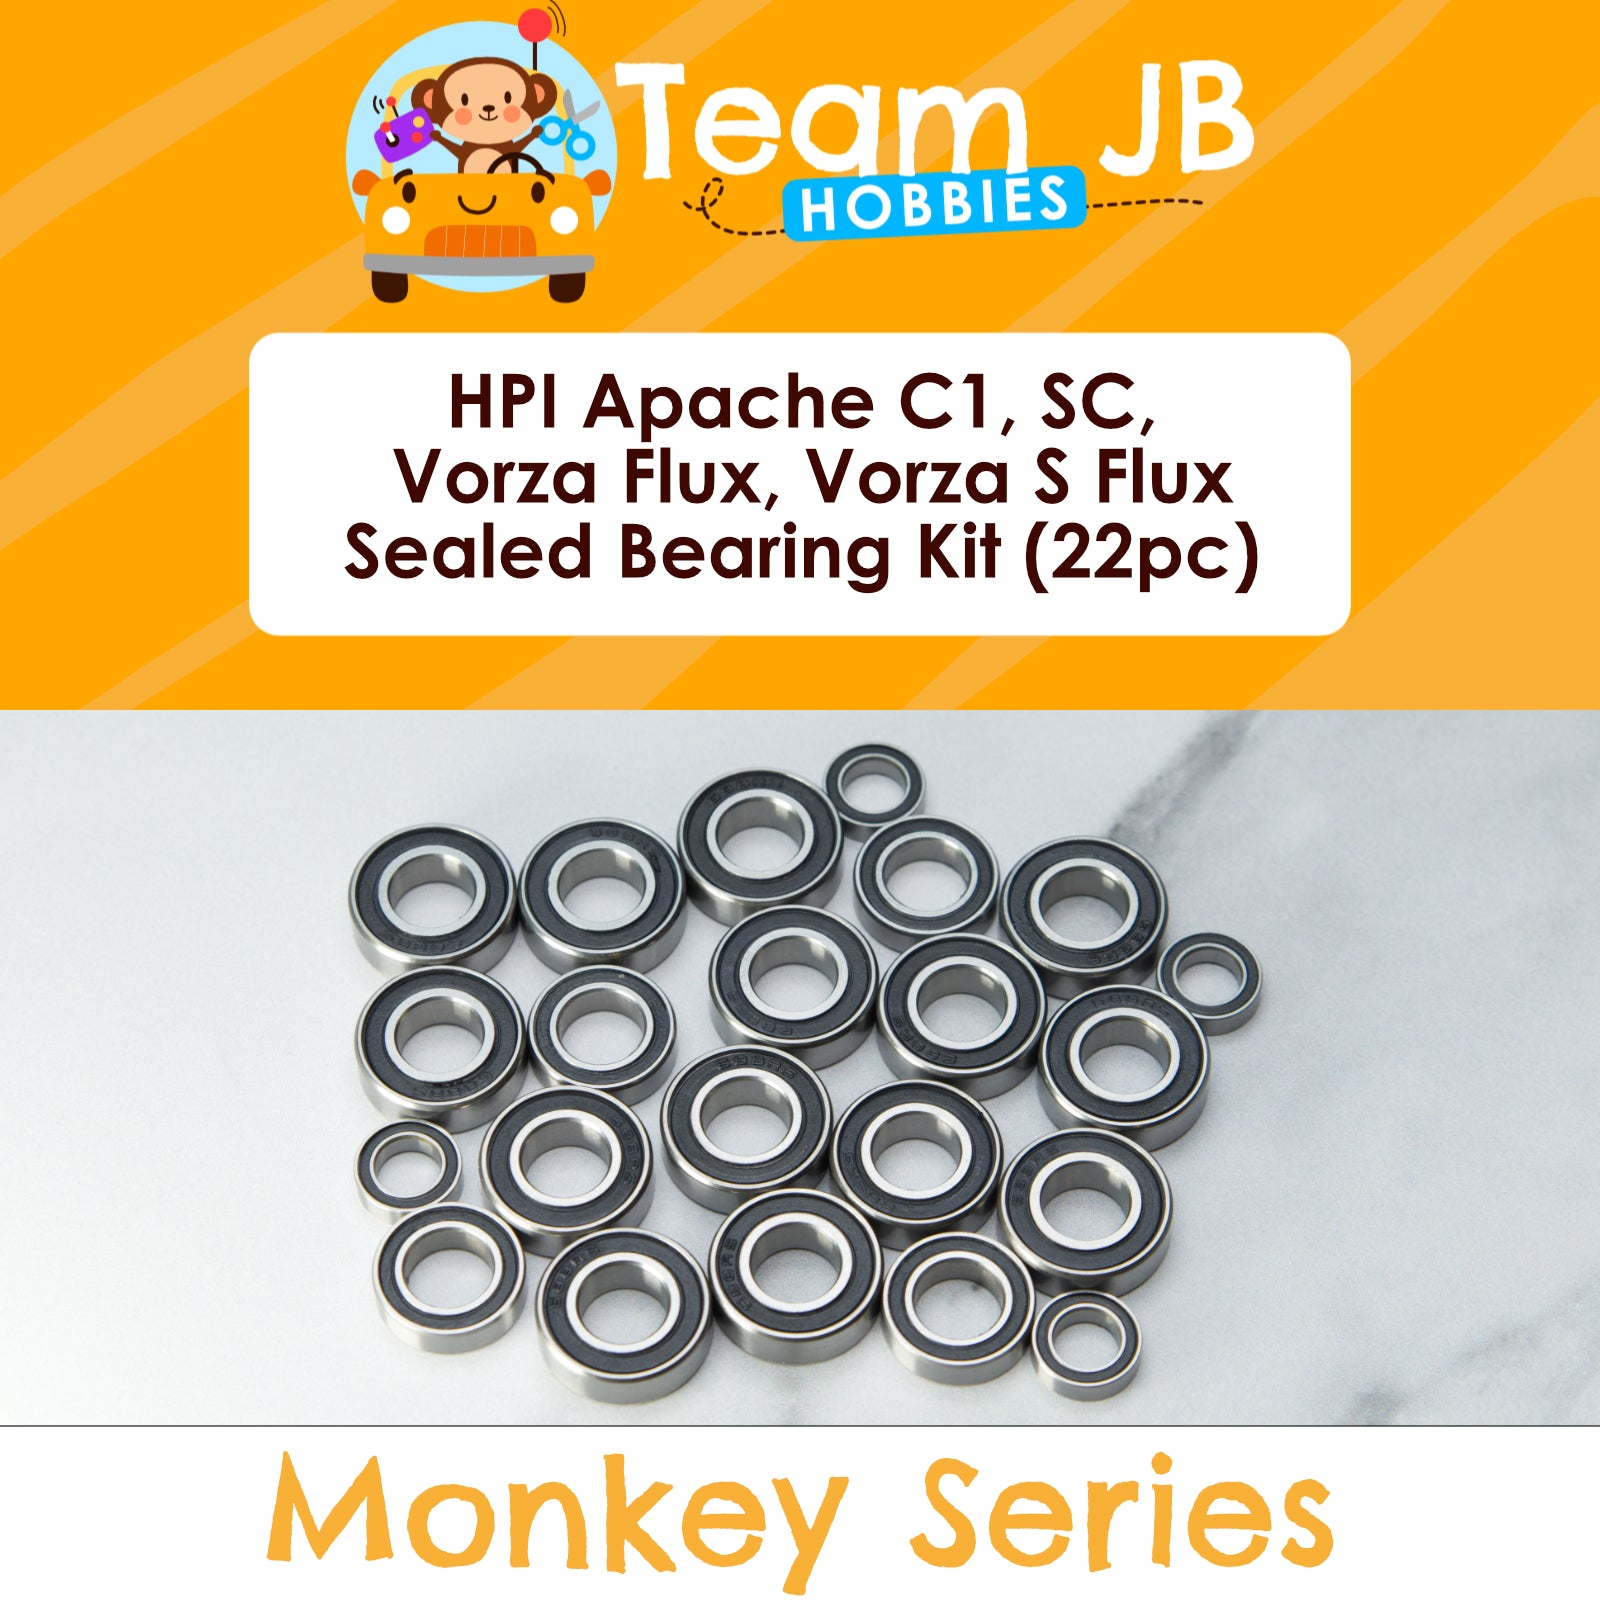 HPI Apache C1, SC, Vorza Flux, Vorza S Flux - Sealed Bearing Kit